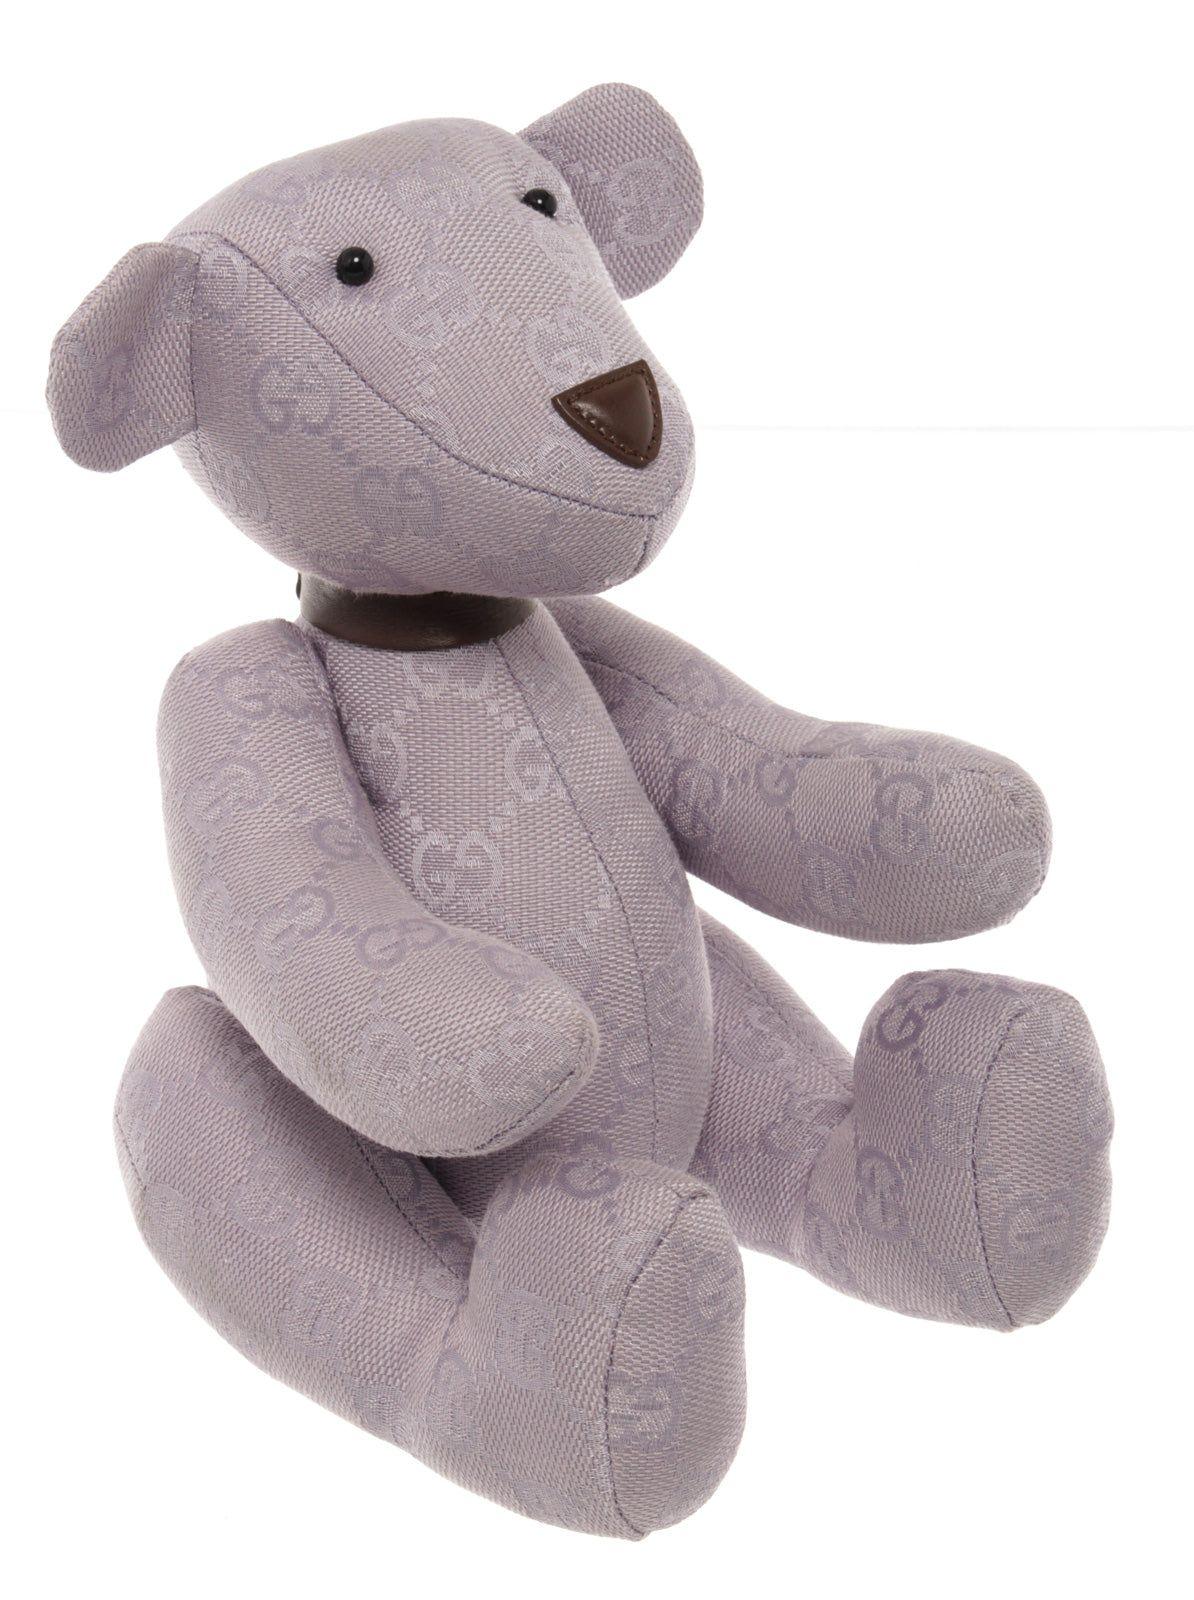 Lavender monogram Gucci stuffed Teddy Bear. 



50801MSC